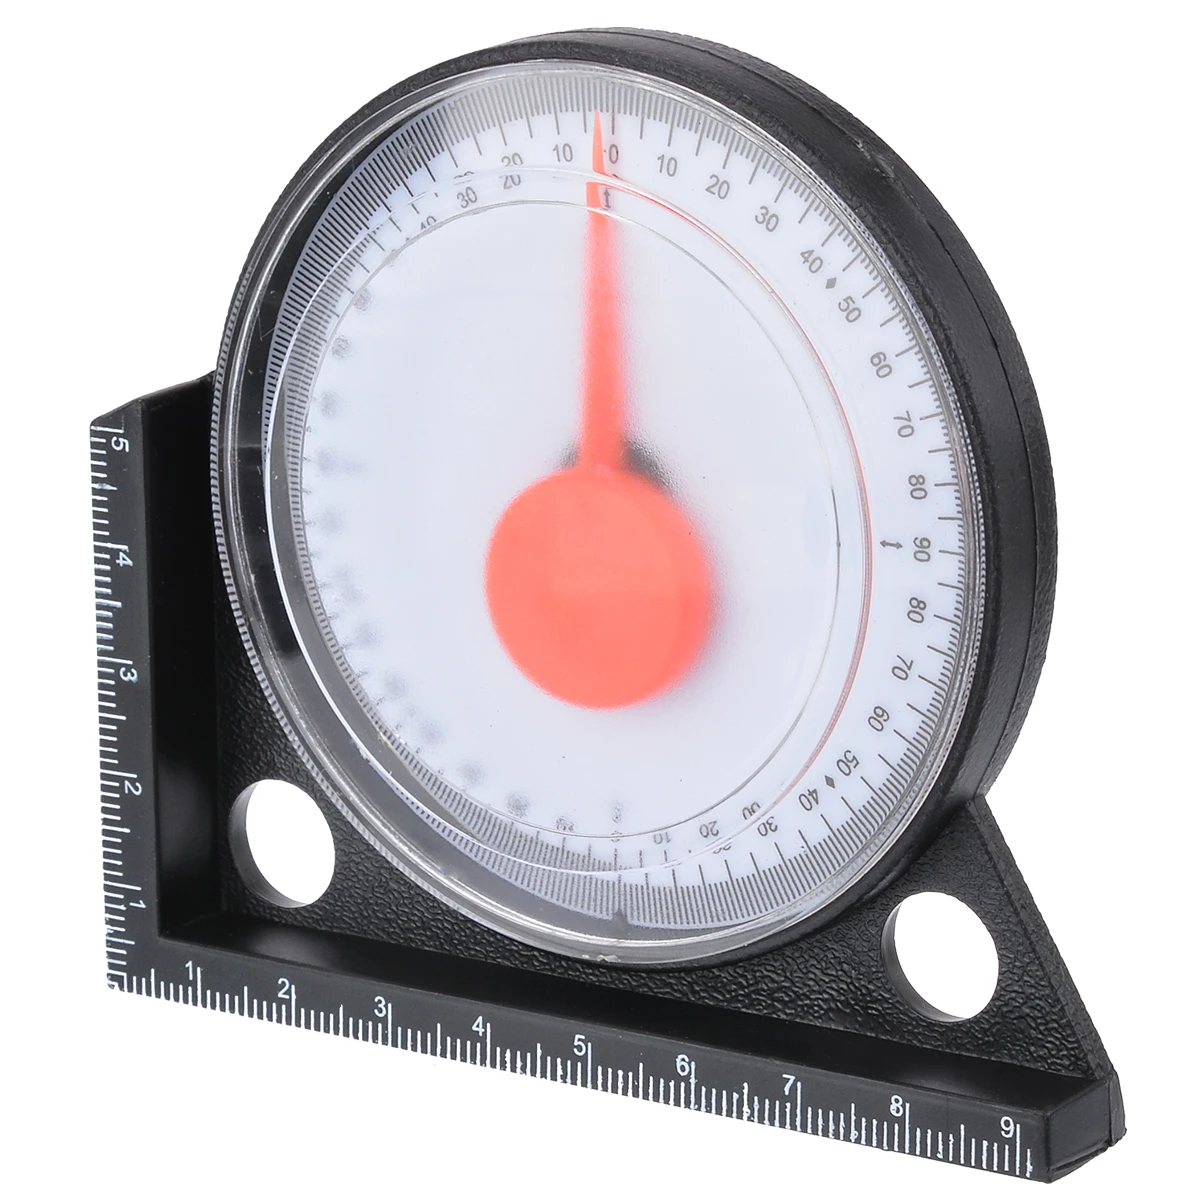 1pcs Measuring Inclinometer Slope Angle Finder Protractor Tilt Level Meter Clinometer Gauge Gauging Tools